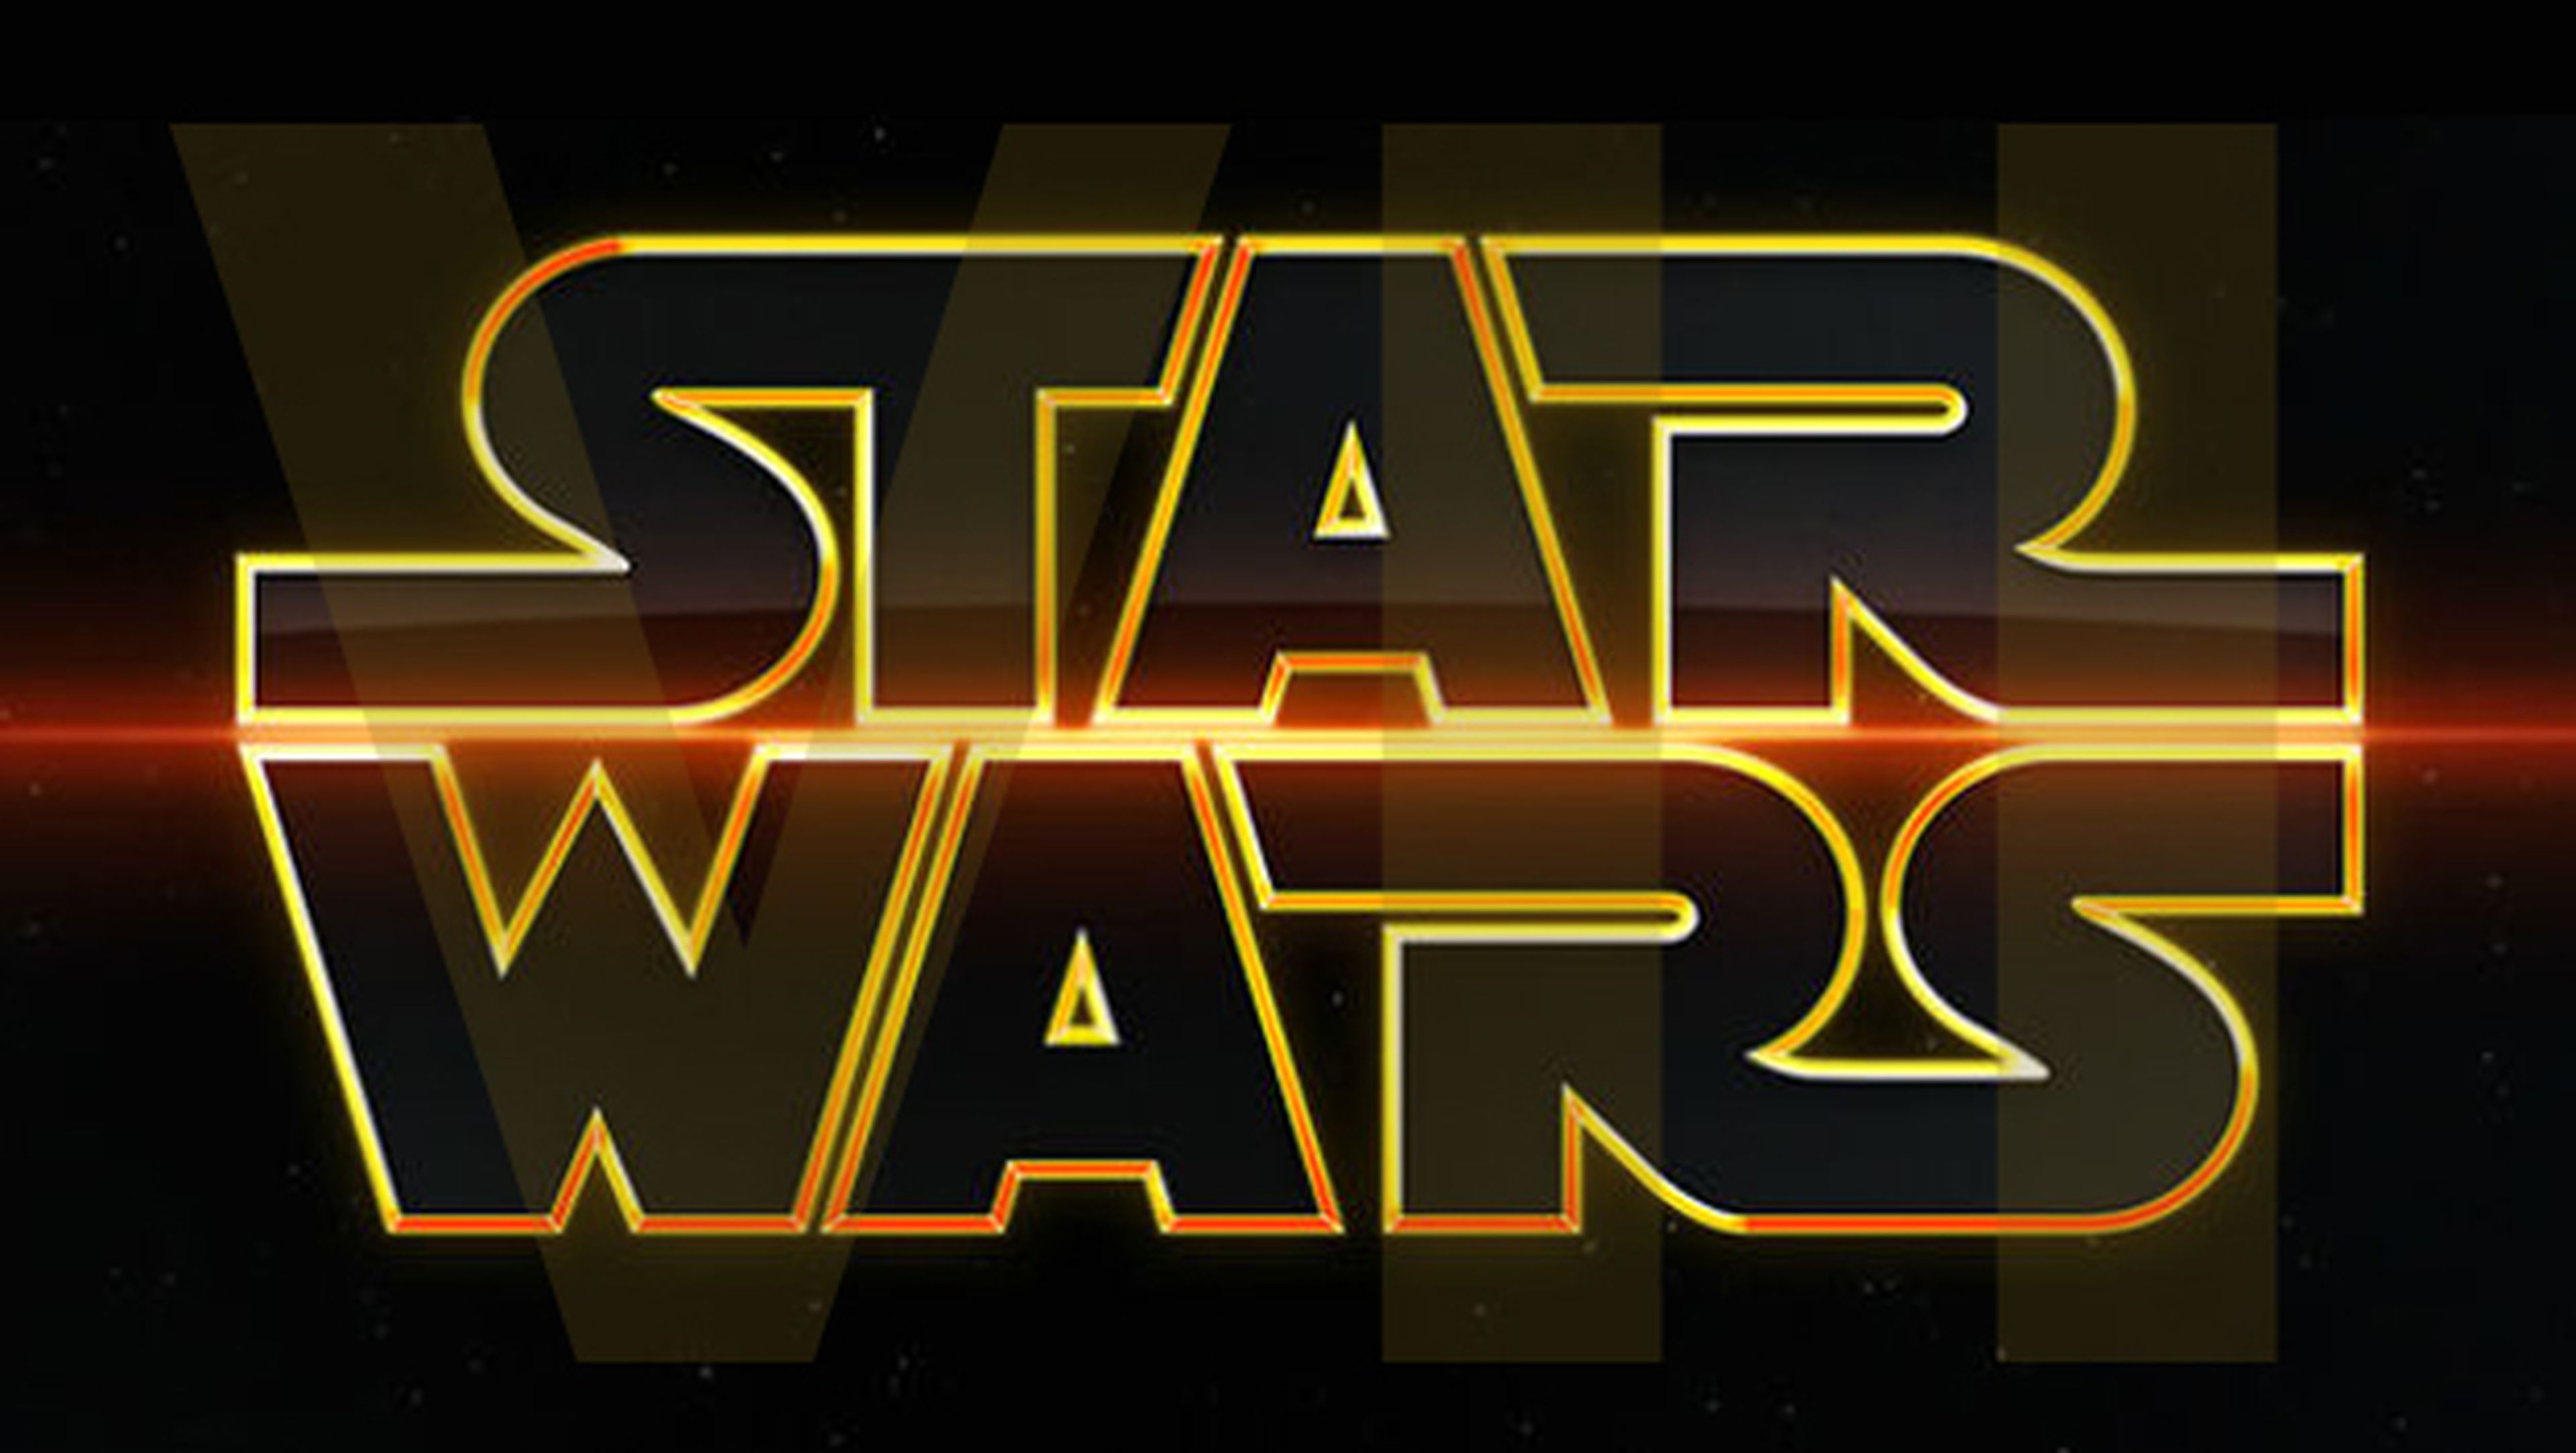 El trailer de Star Wars VII mañana en exclusiva en iTunes